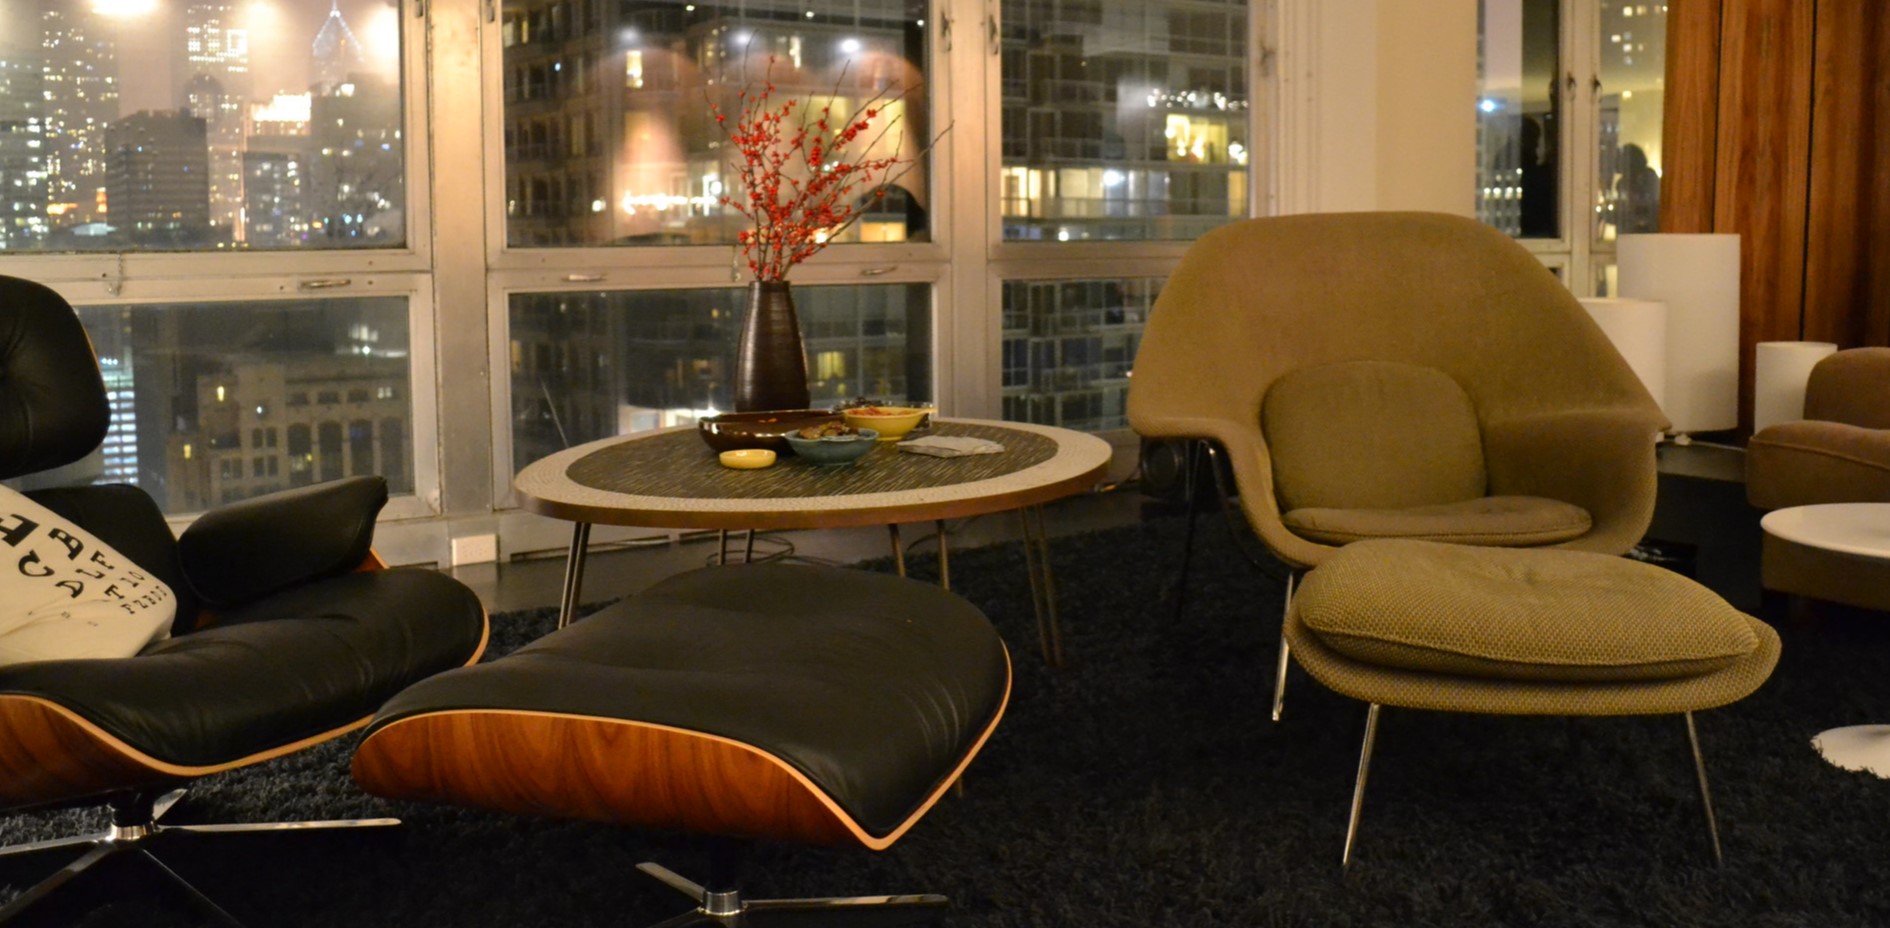 Между двумя модными дизайнерскими креслами можно поставить небольшой журнальный столик